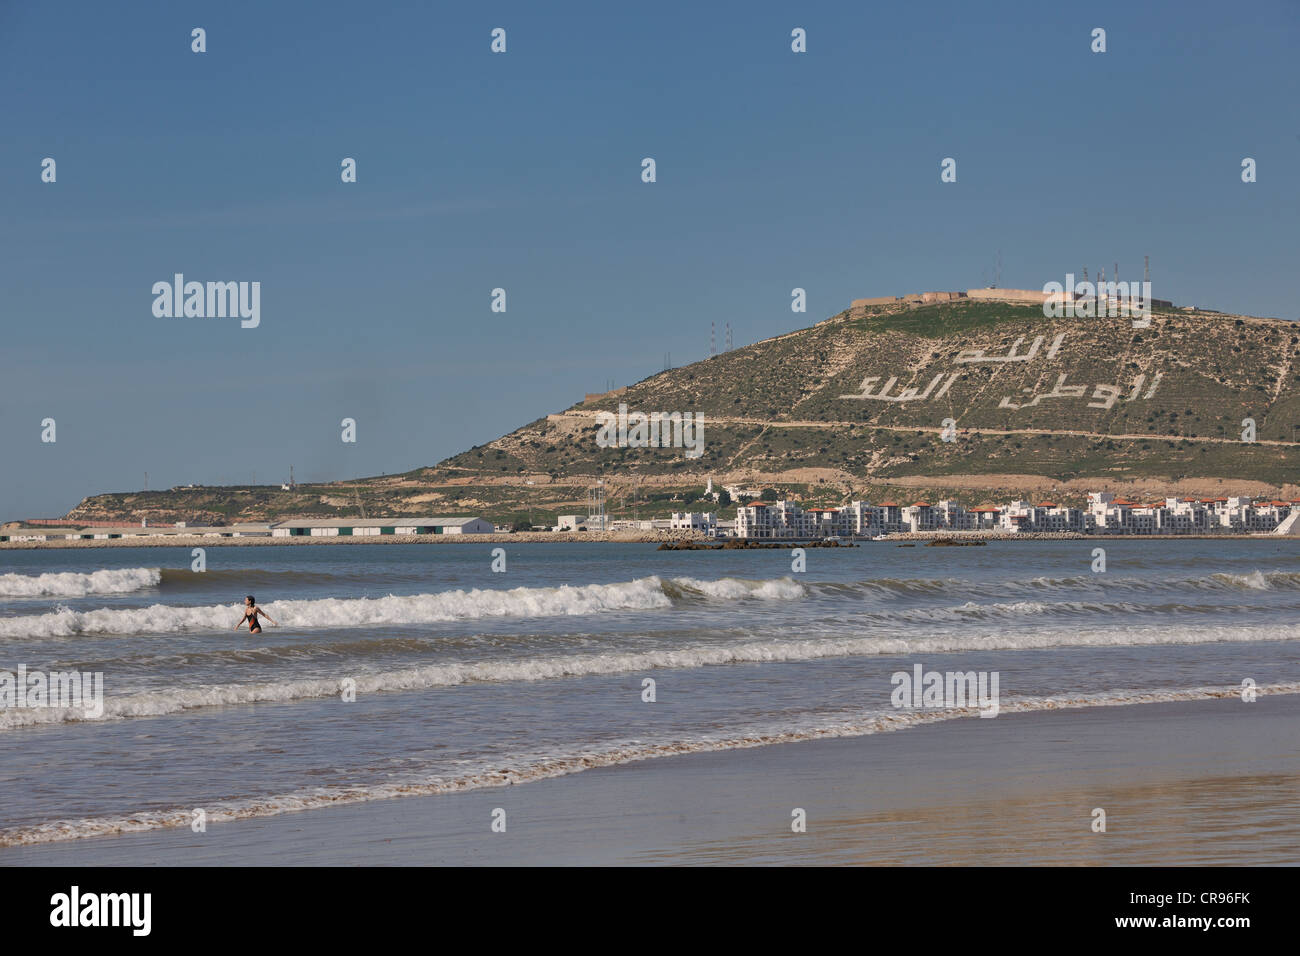 El Agadir Beach, colina con las palabras, Allah, al-Watan, al-Malik, en el sentido de Dios, de la patria, el Rey, Marruecos, África Foto de stock